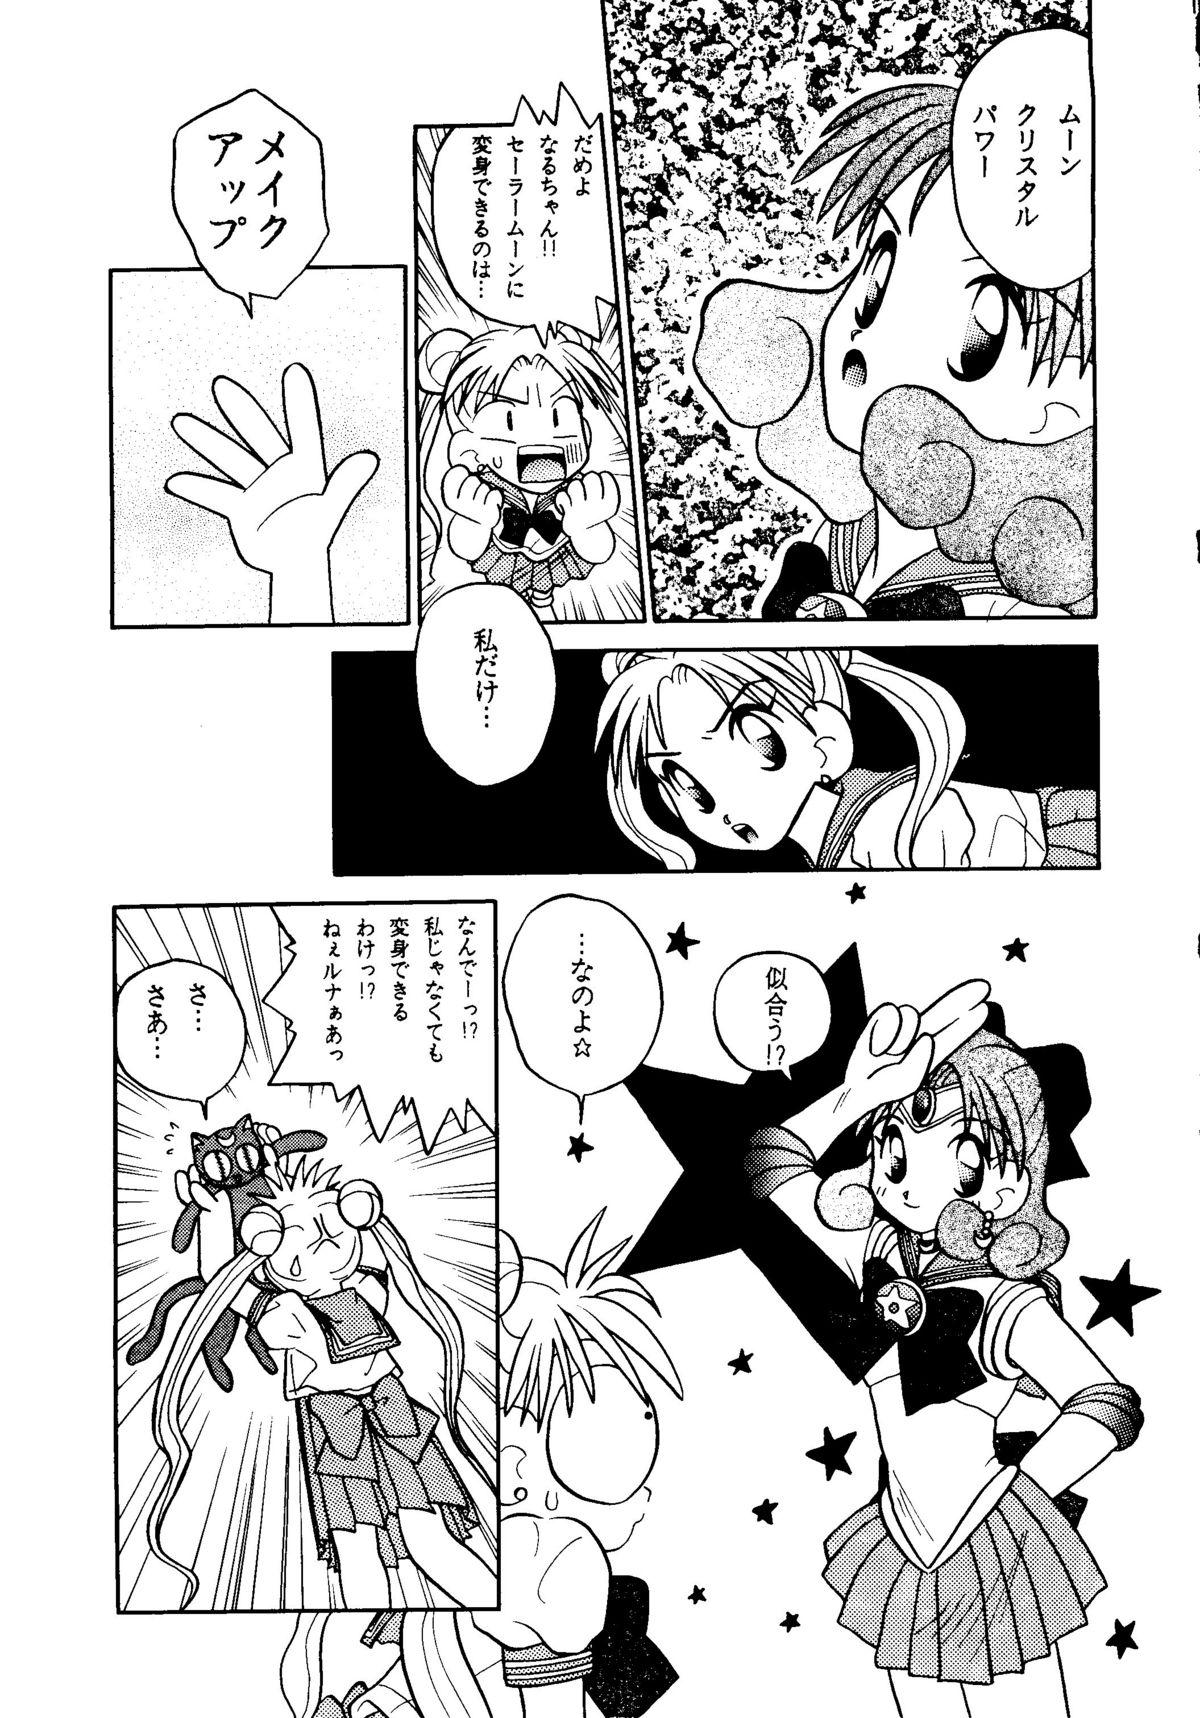 Petera GG3 SP 4 - Paradise City 2 - Sailor moon Futanari - Page 9